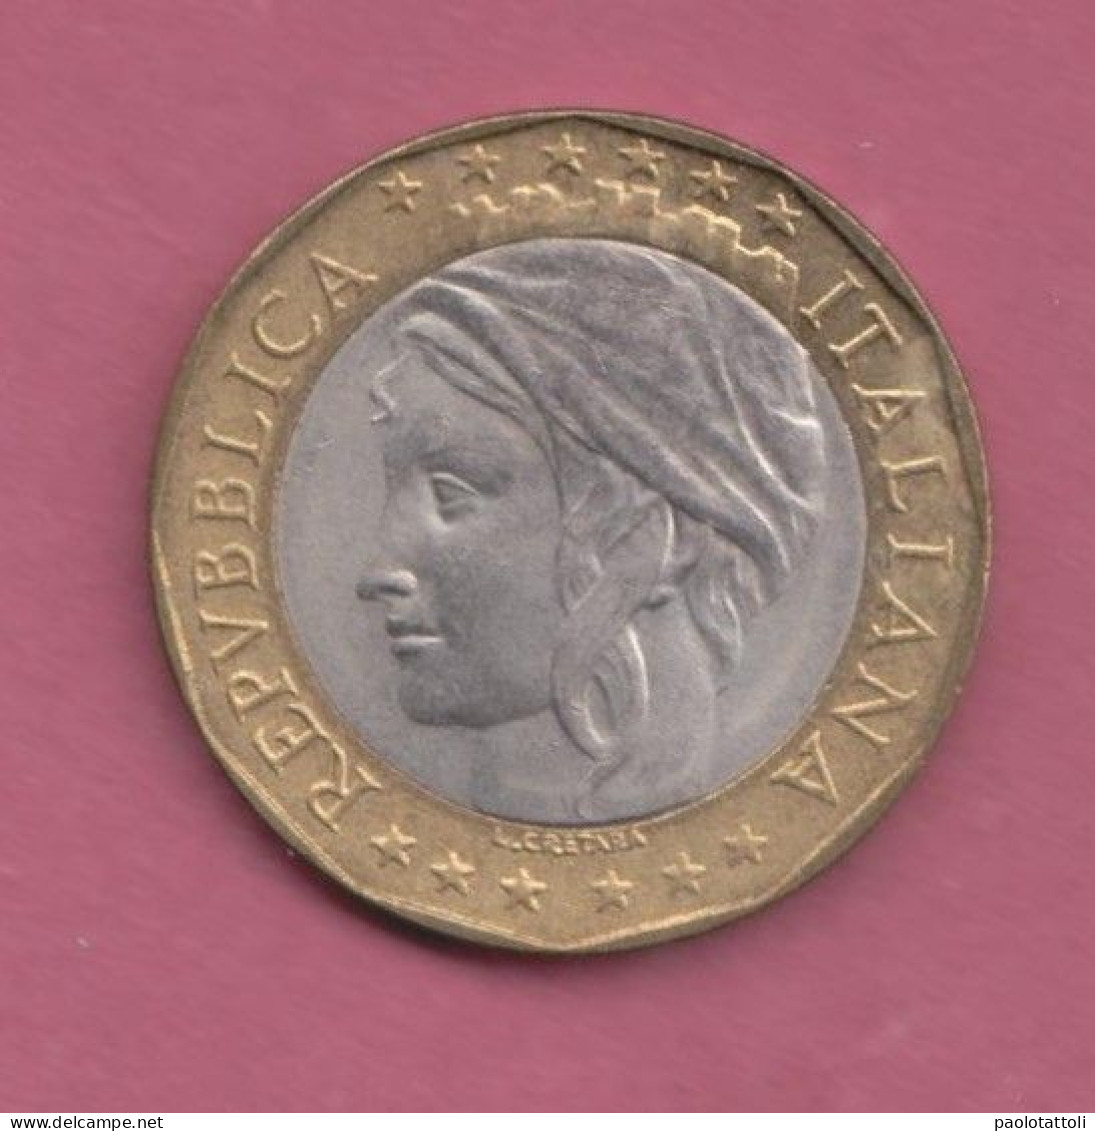 Italia, 1997- 1000 Lire - Bimetallic Copper-nickel Center In Bronzital Ring- Obverse Allegory Of Italian Repubblic. - 1 000 Lire